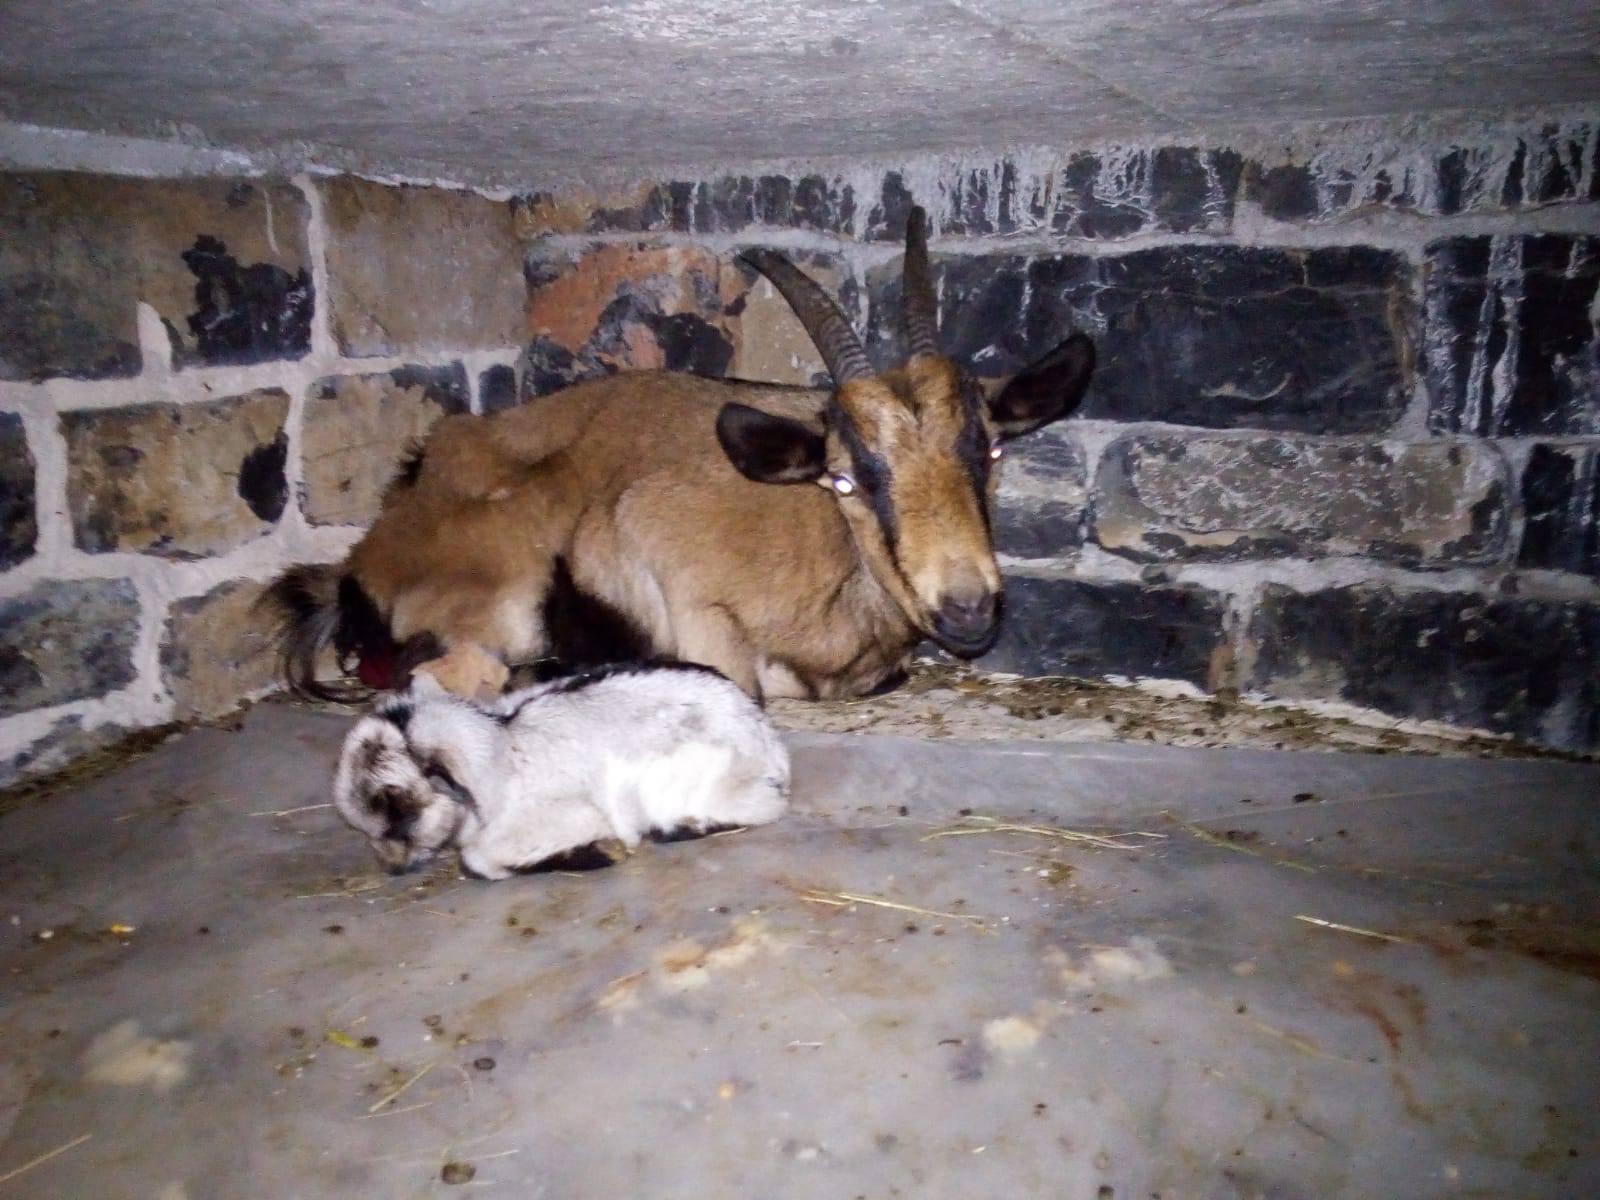 Koza nakon amputacije noge ojarila jare: 'Svi su mi rekli da ju uspavam, ali nisam to htio'